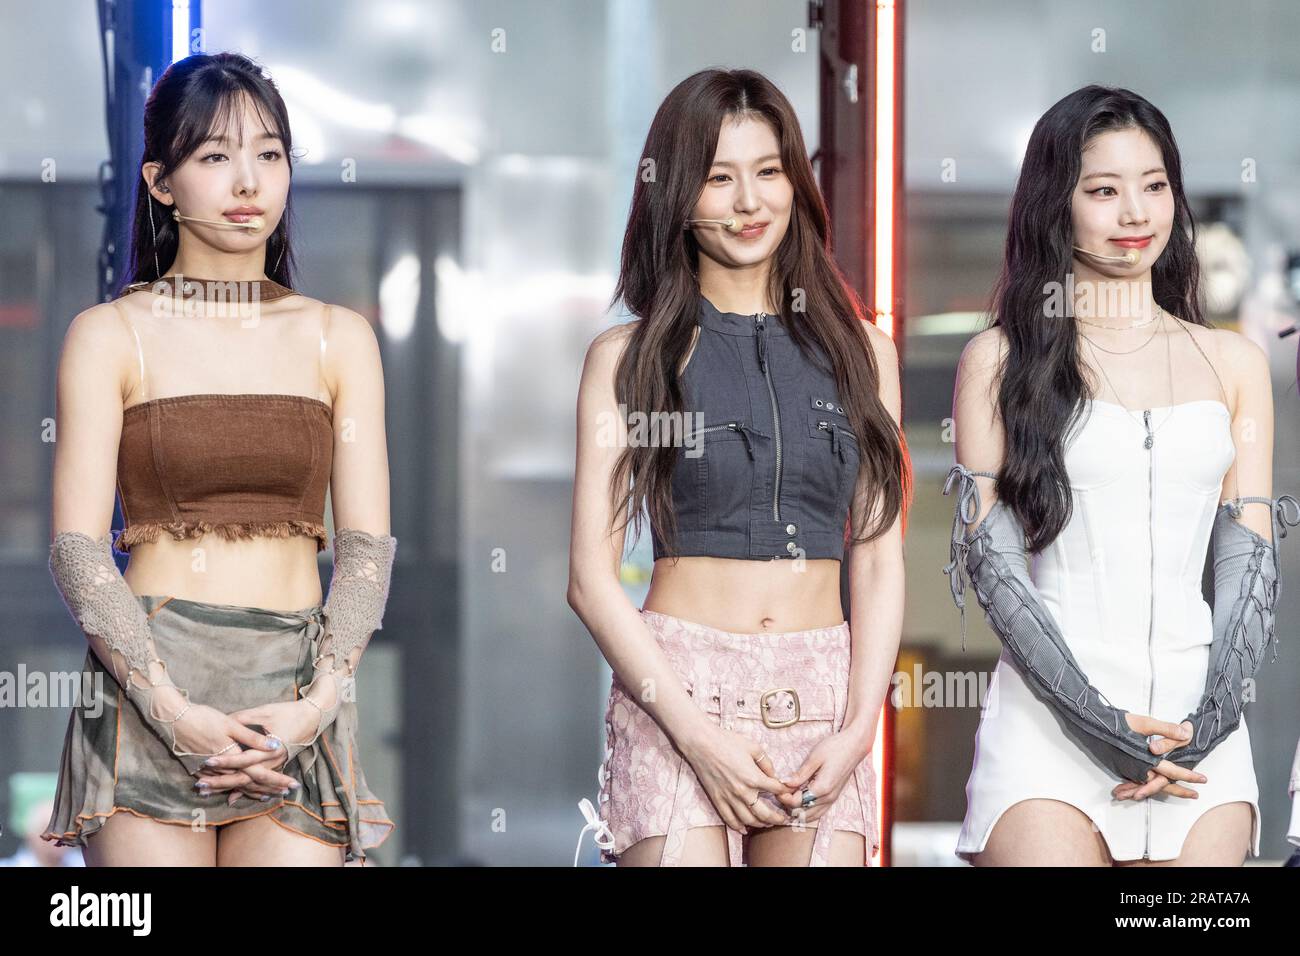 Membros Girl Group Sul Coreano Twice Chegam Tapete Vermelho Para —  Fotografia de Stock Editorial © ChinaImages #234200214